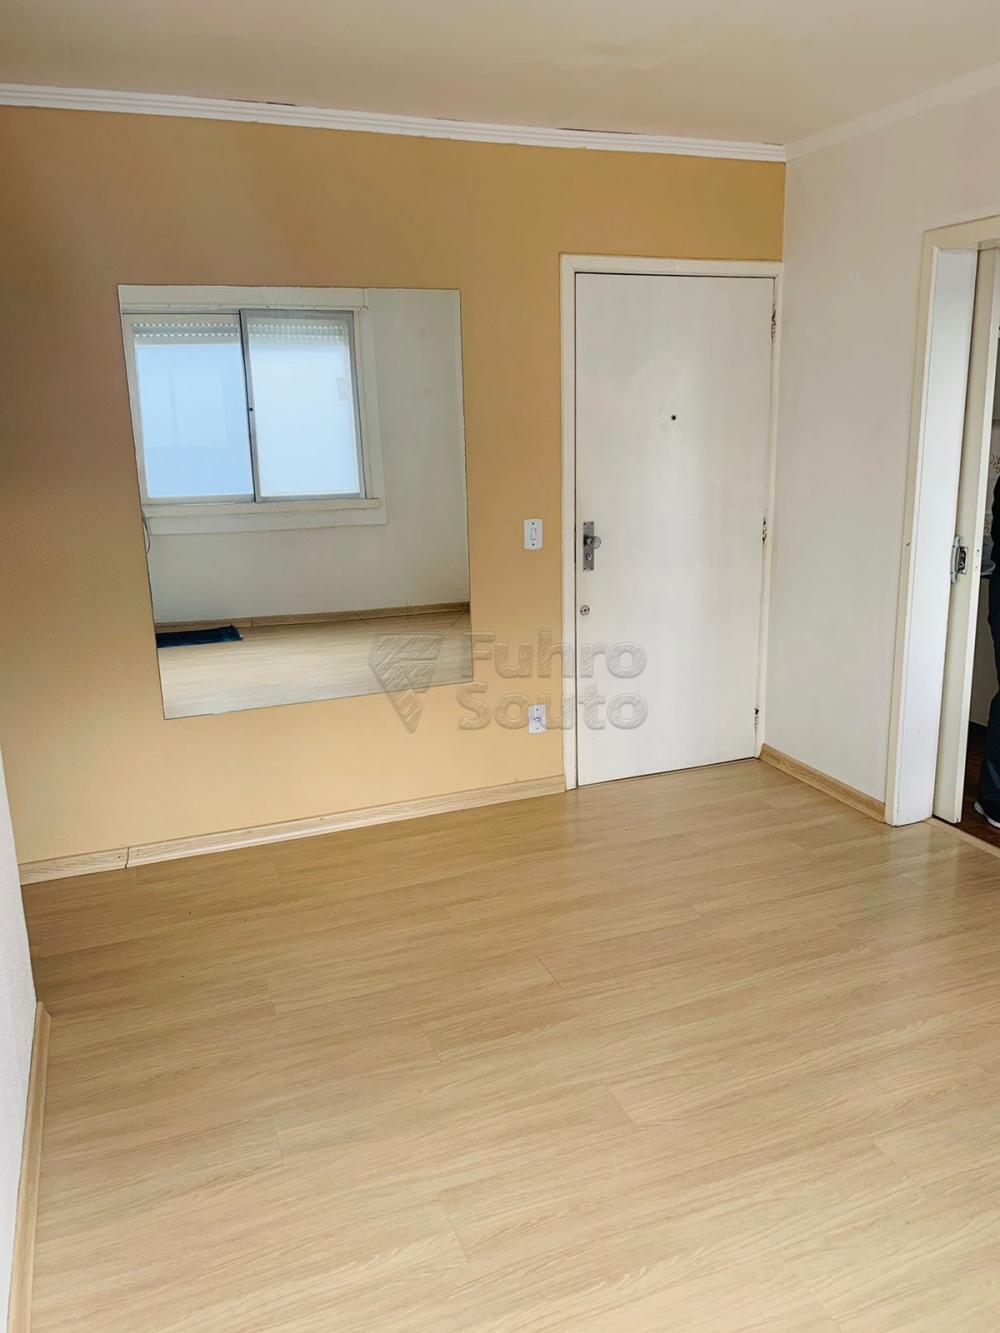 Comprar Apartamento / Padrão em Pelotas R$ 200.000,00 - Foto 6